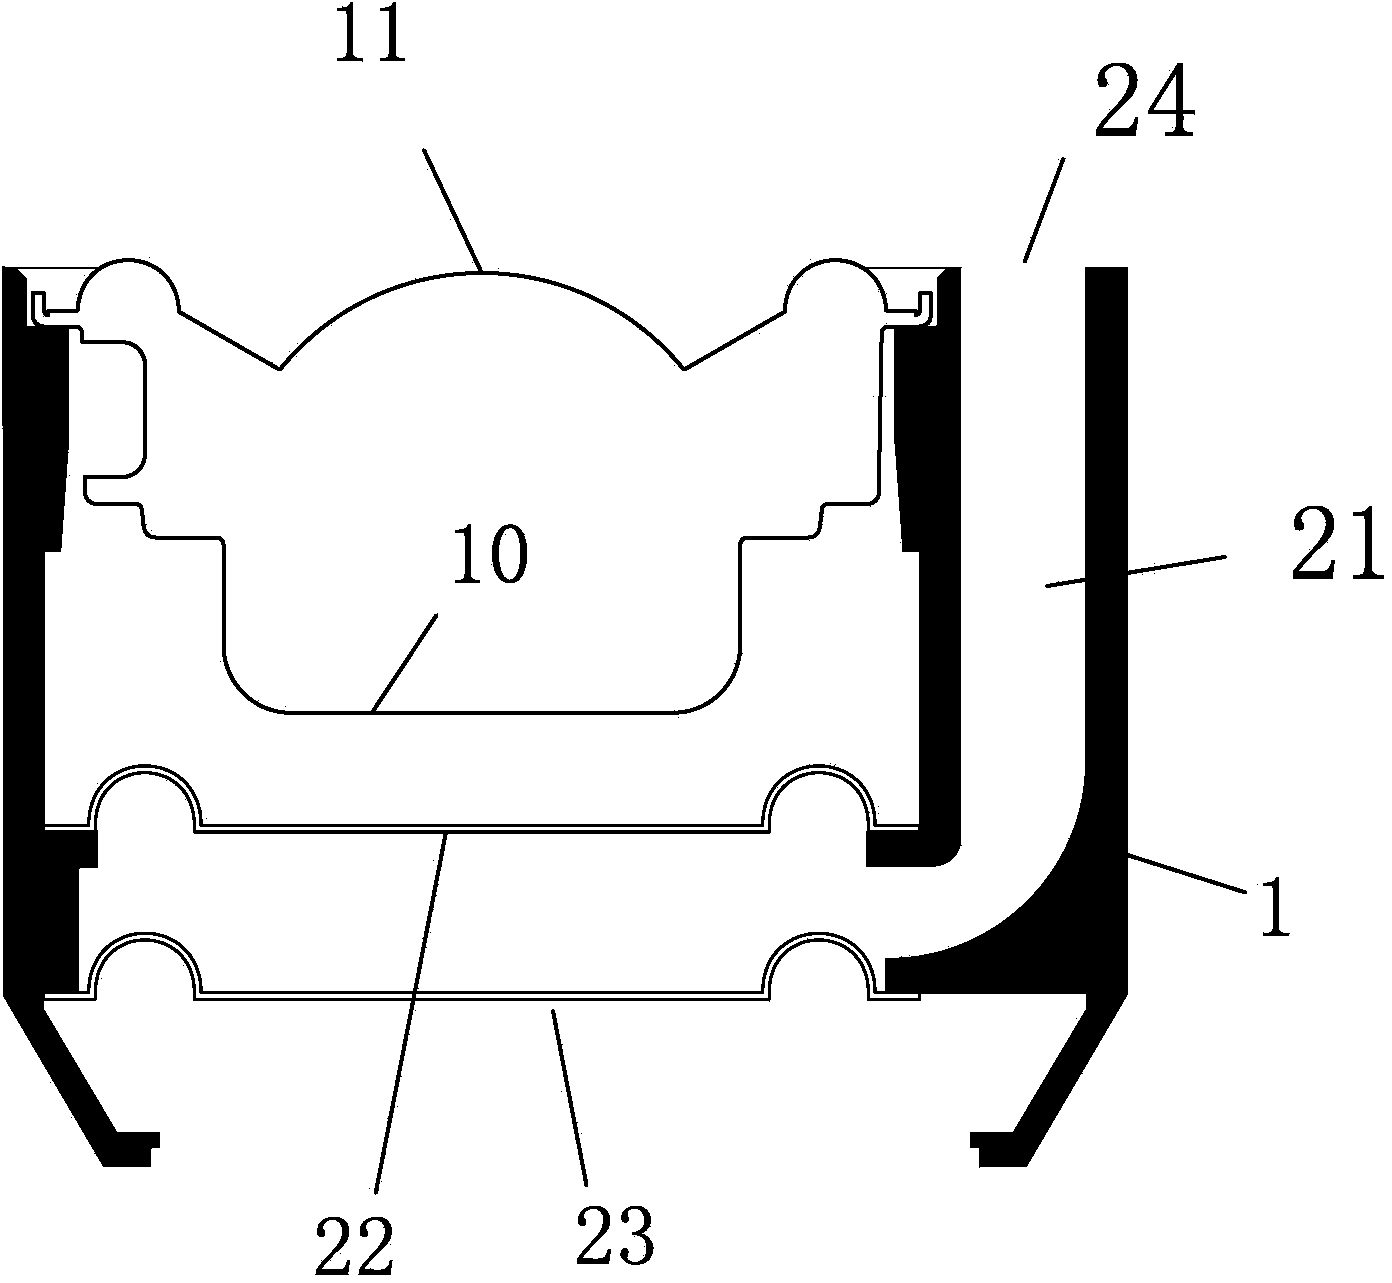 Acoustic structure with passive vibrating diaphragm unit